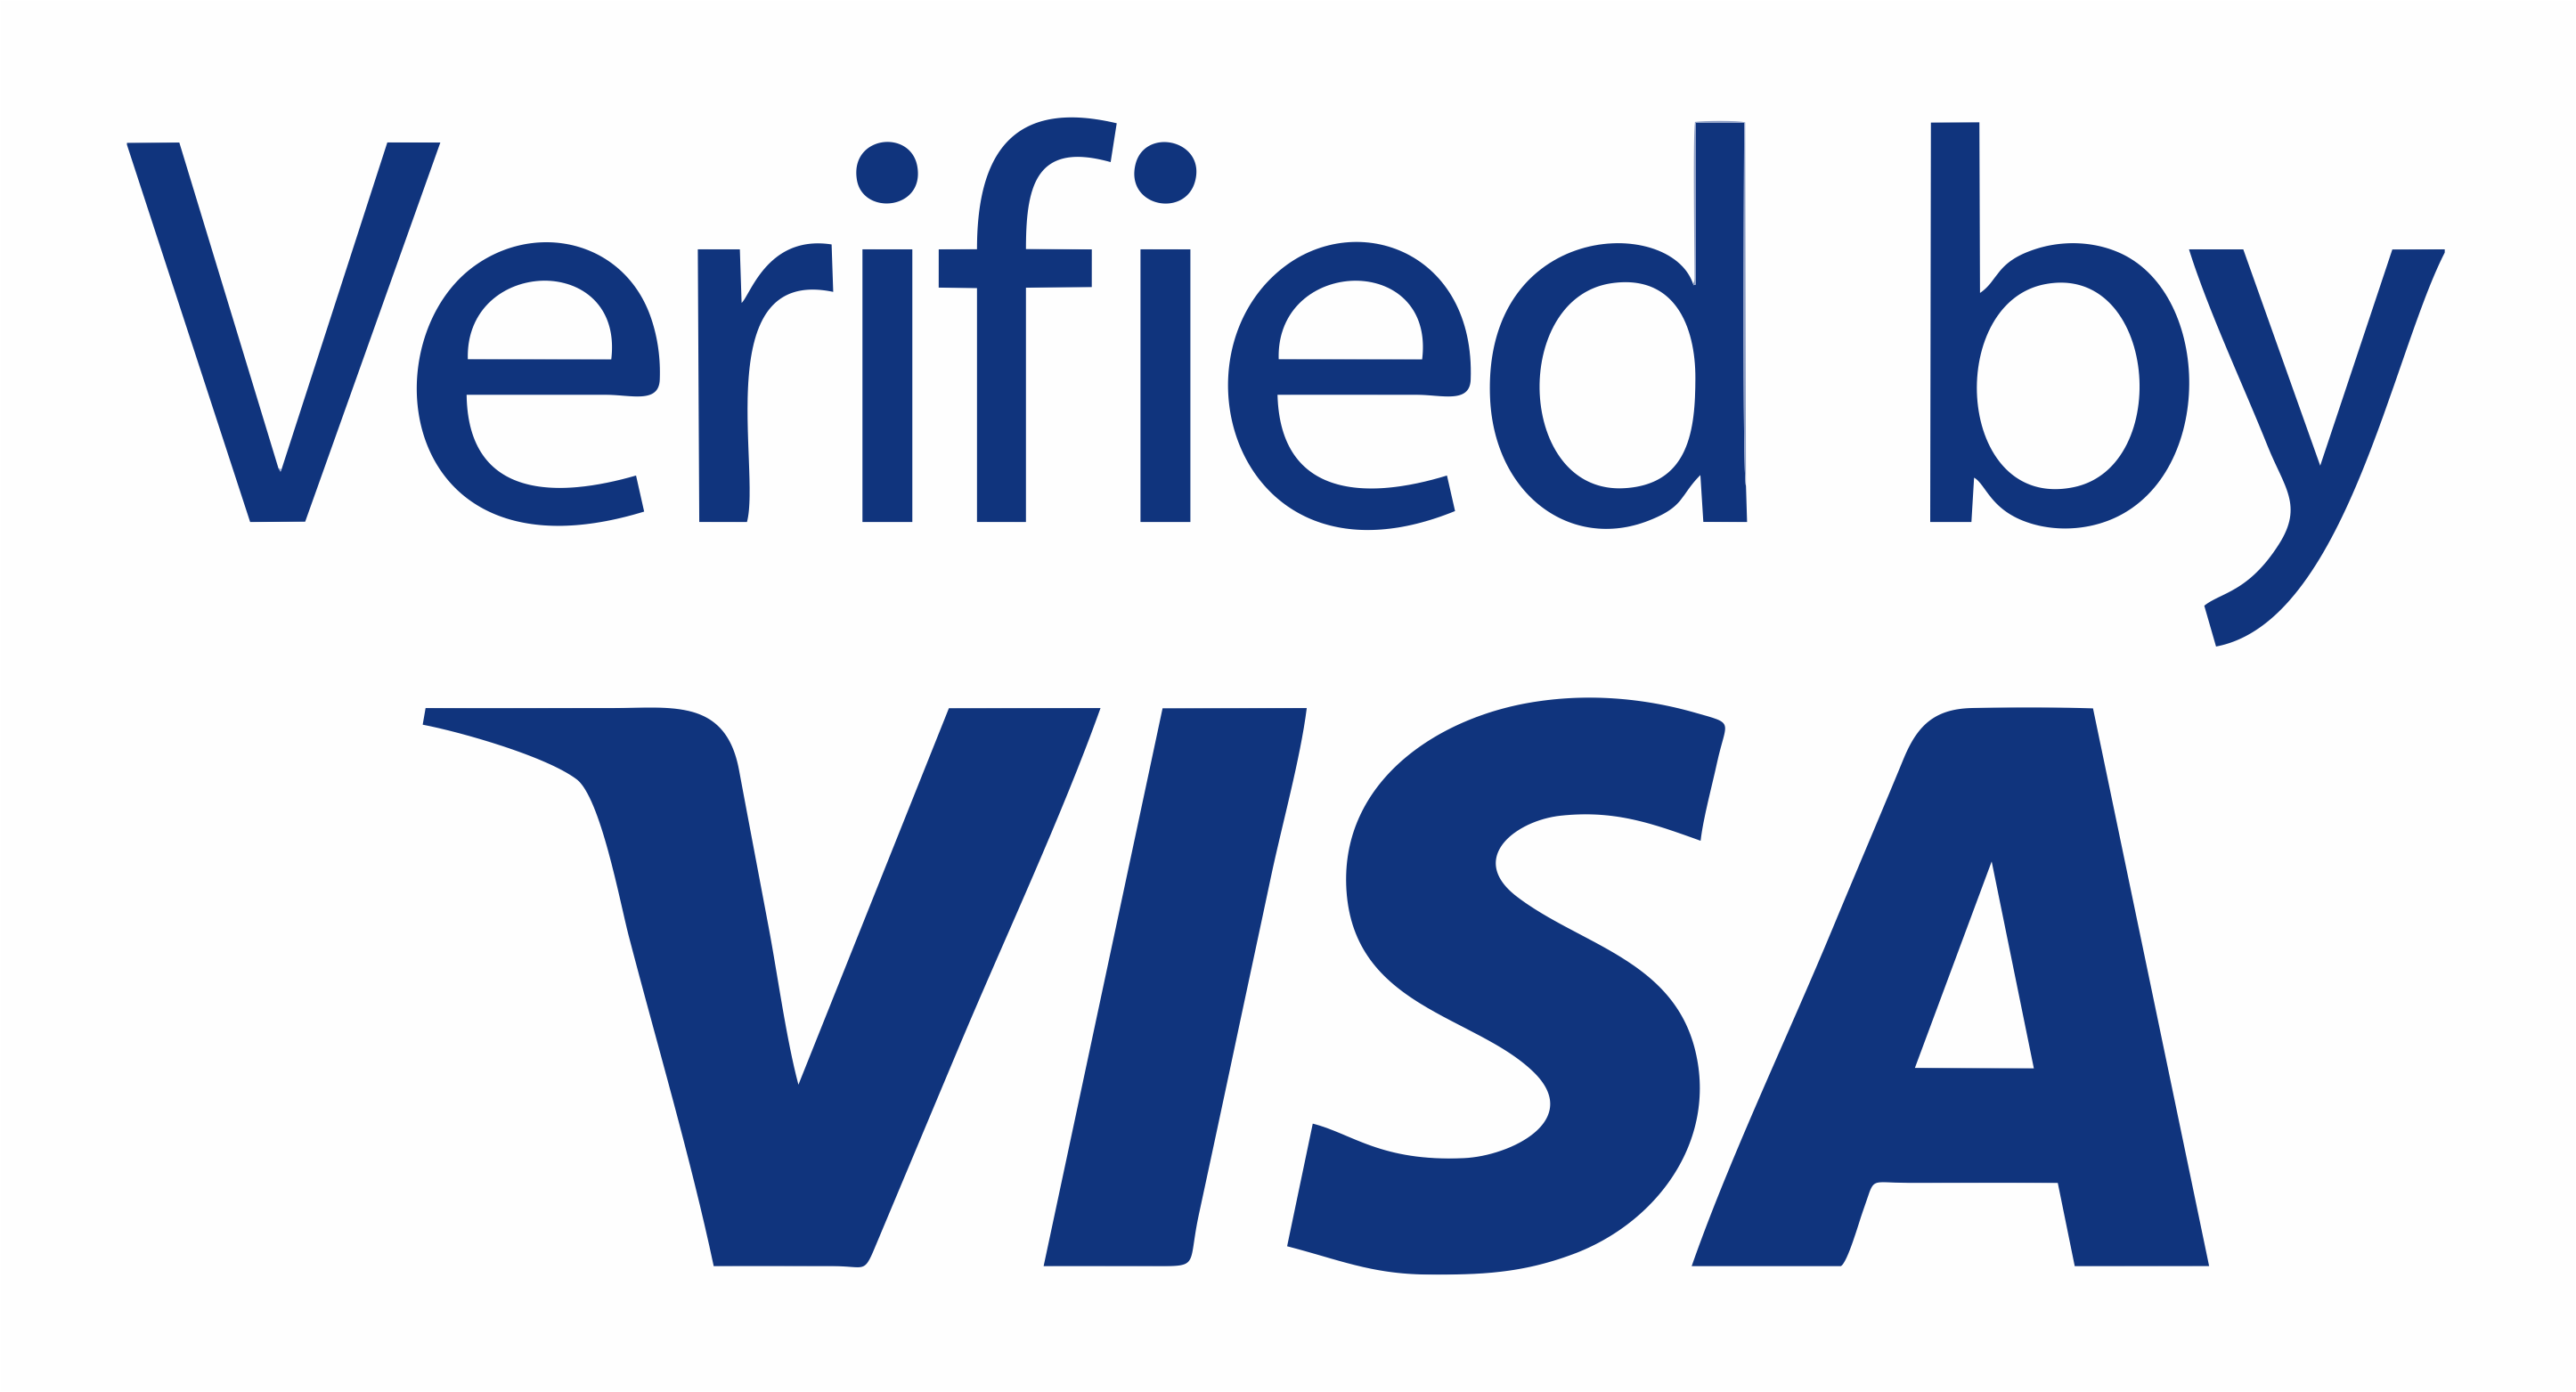 T me vbv bins. Verified by visa logo. Verified by visa svg. Verified by visa logo svg. Виза логотип без фона.